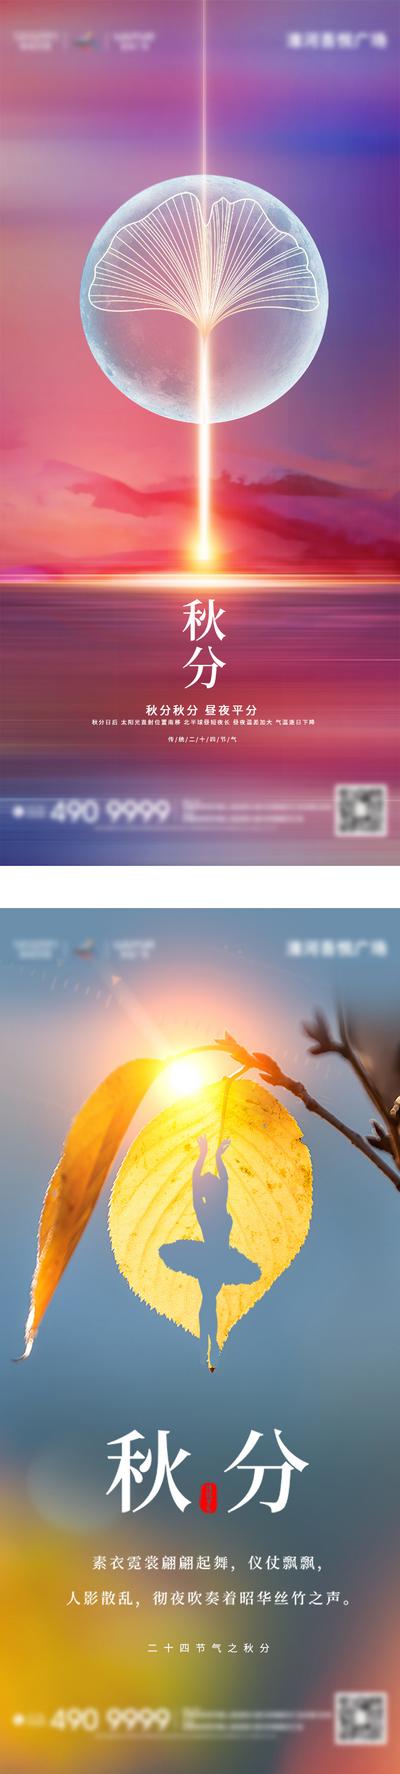 南门网 广告 海报 电商 秋分 插画 地产 医美 活动 汽车 节气